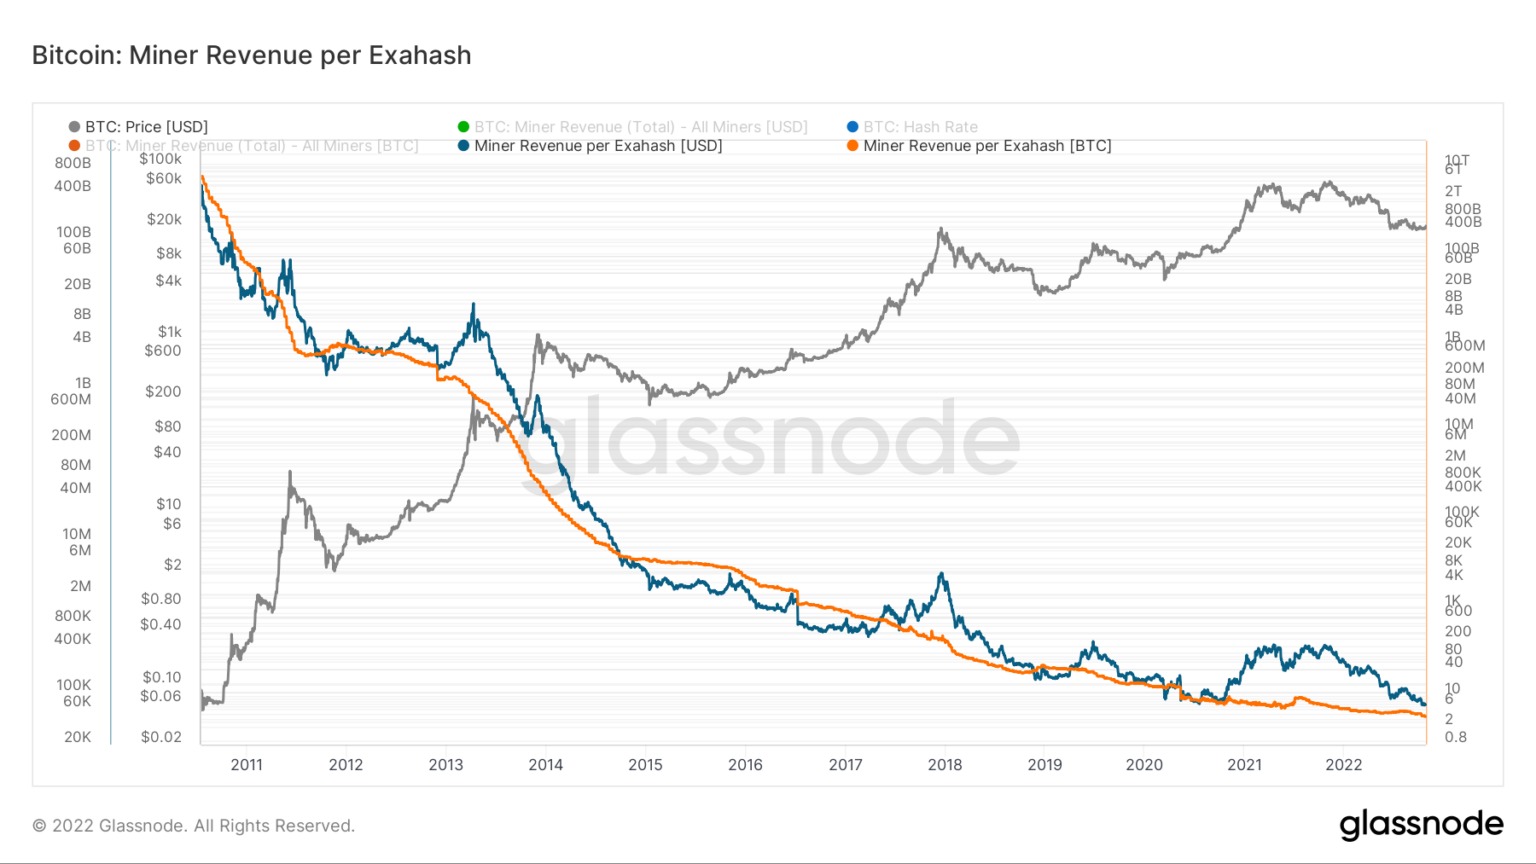 Graf zobrazující příjmy těžařů Bitcoinu na exahash v letech 2011 až 2022 (zdroj: Glassnode)